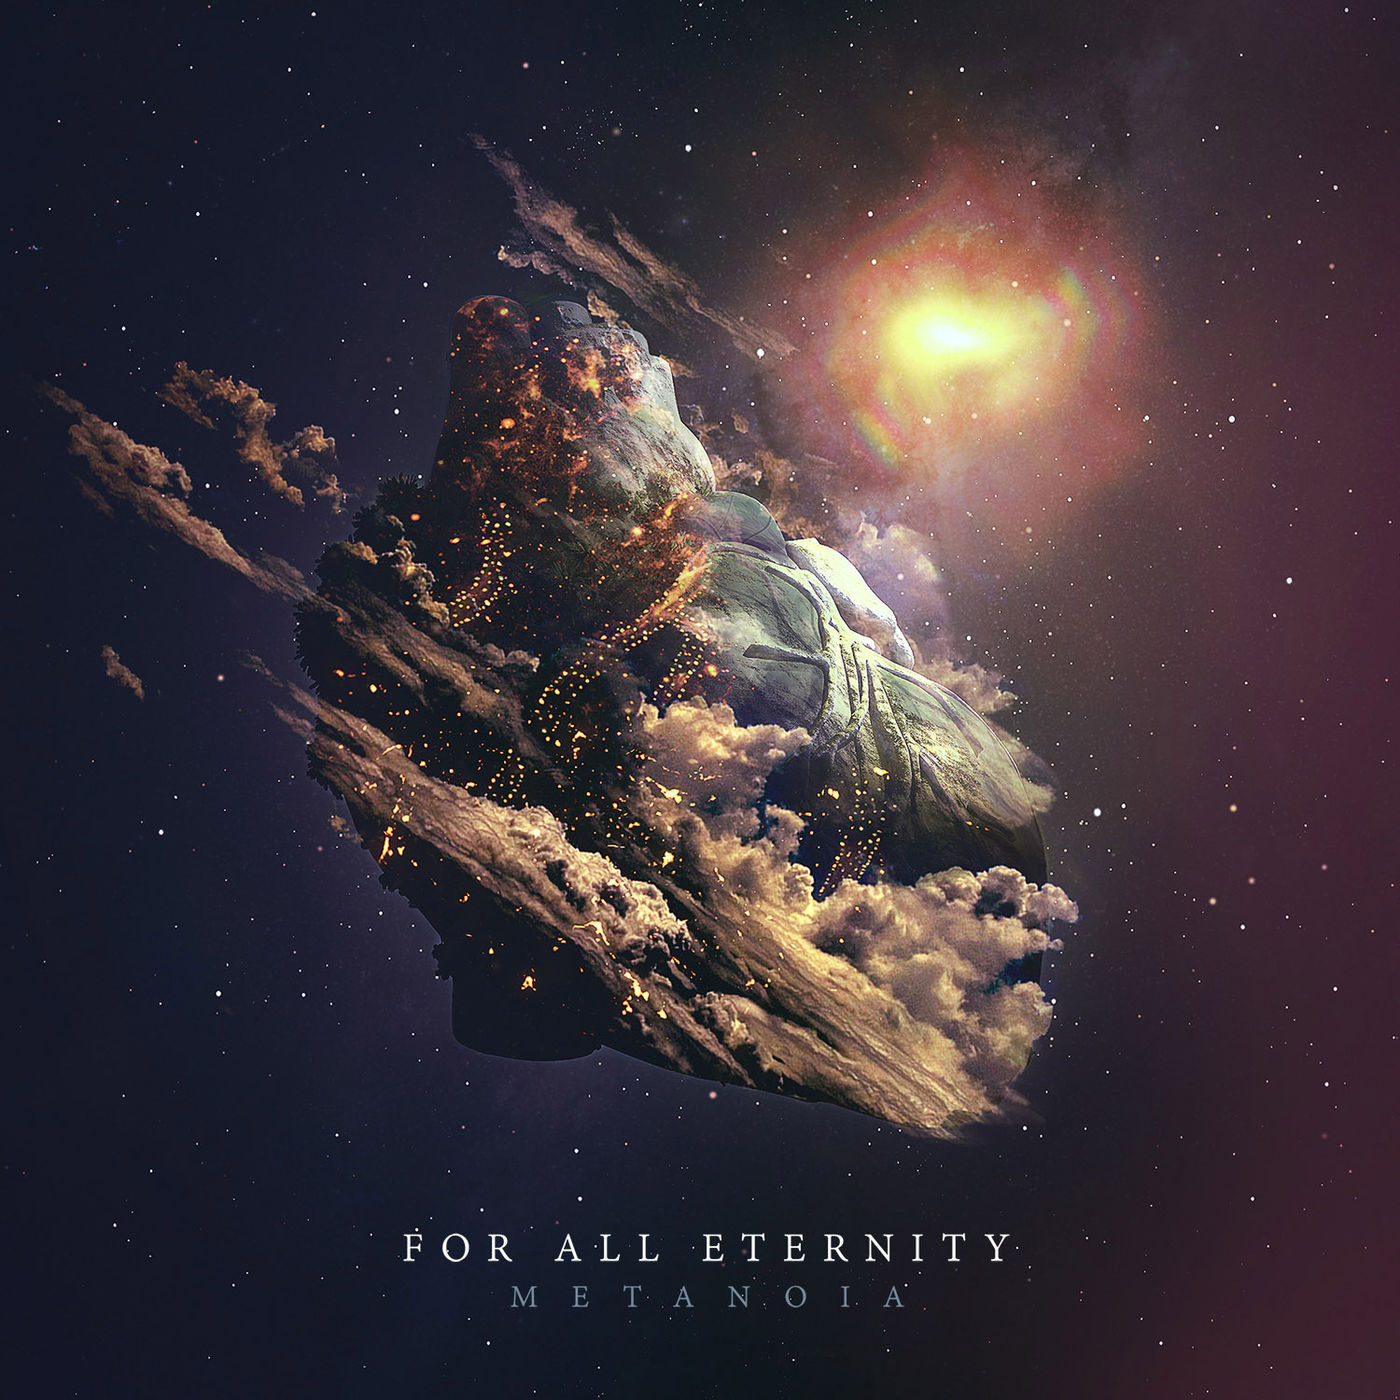 For All Eternity - Metanoia (2015) » CORE RADIO!